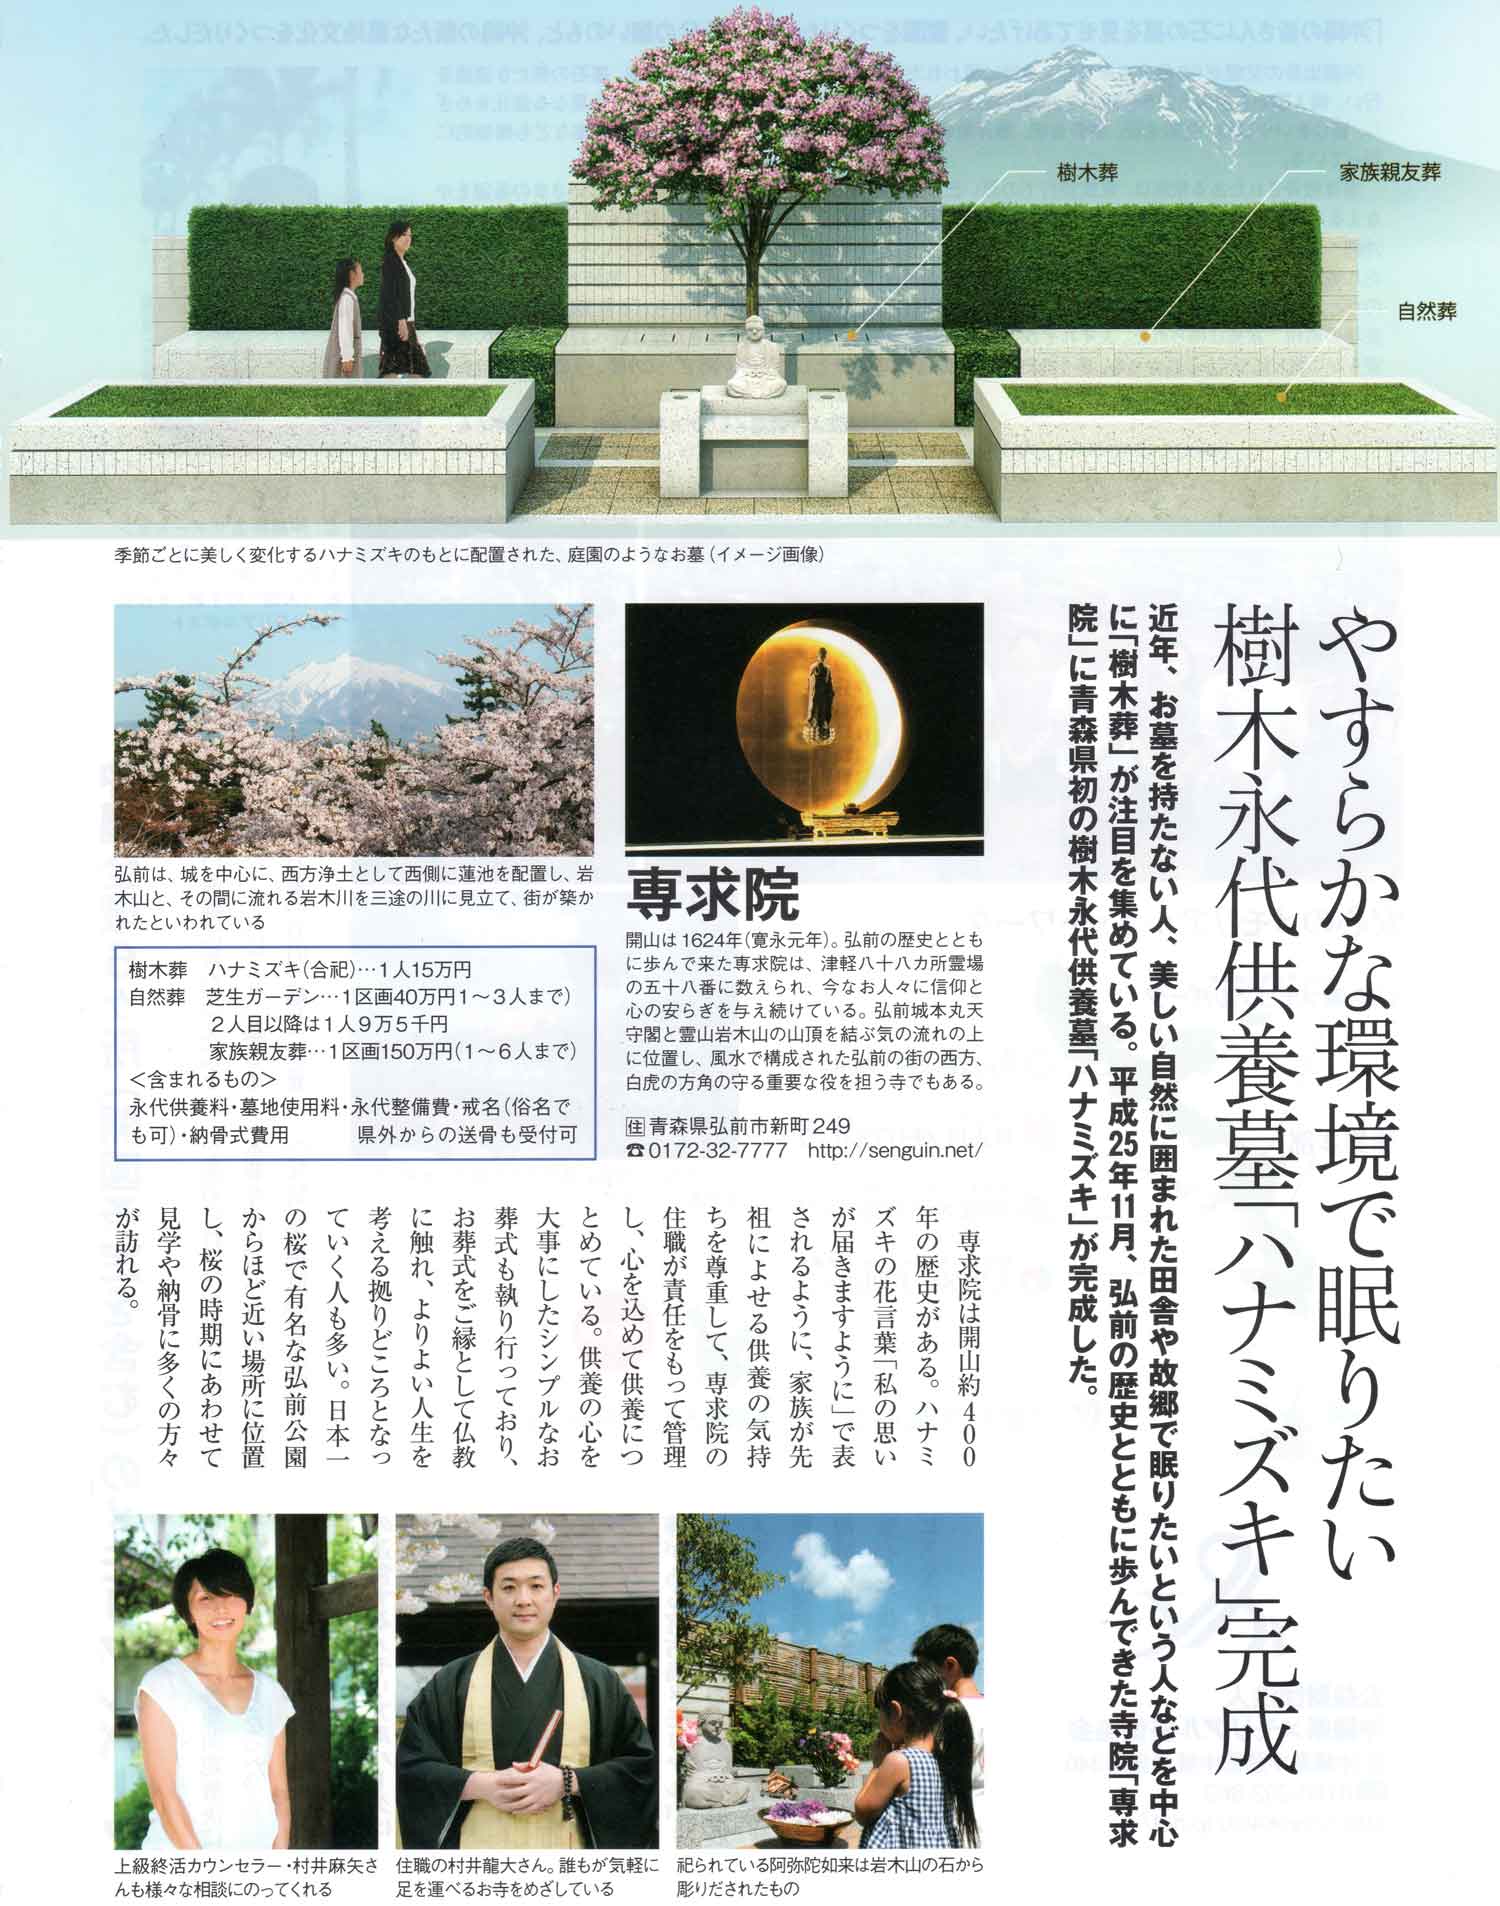 葬祭流儀　東京　vol.3 に専求院の樹木葬が掲載されました。